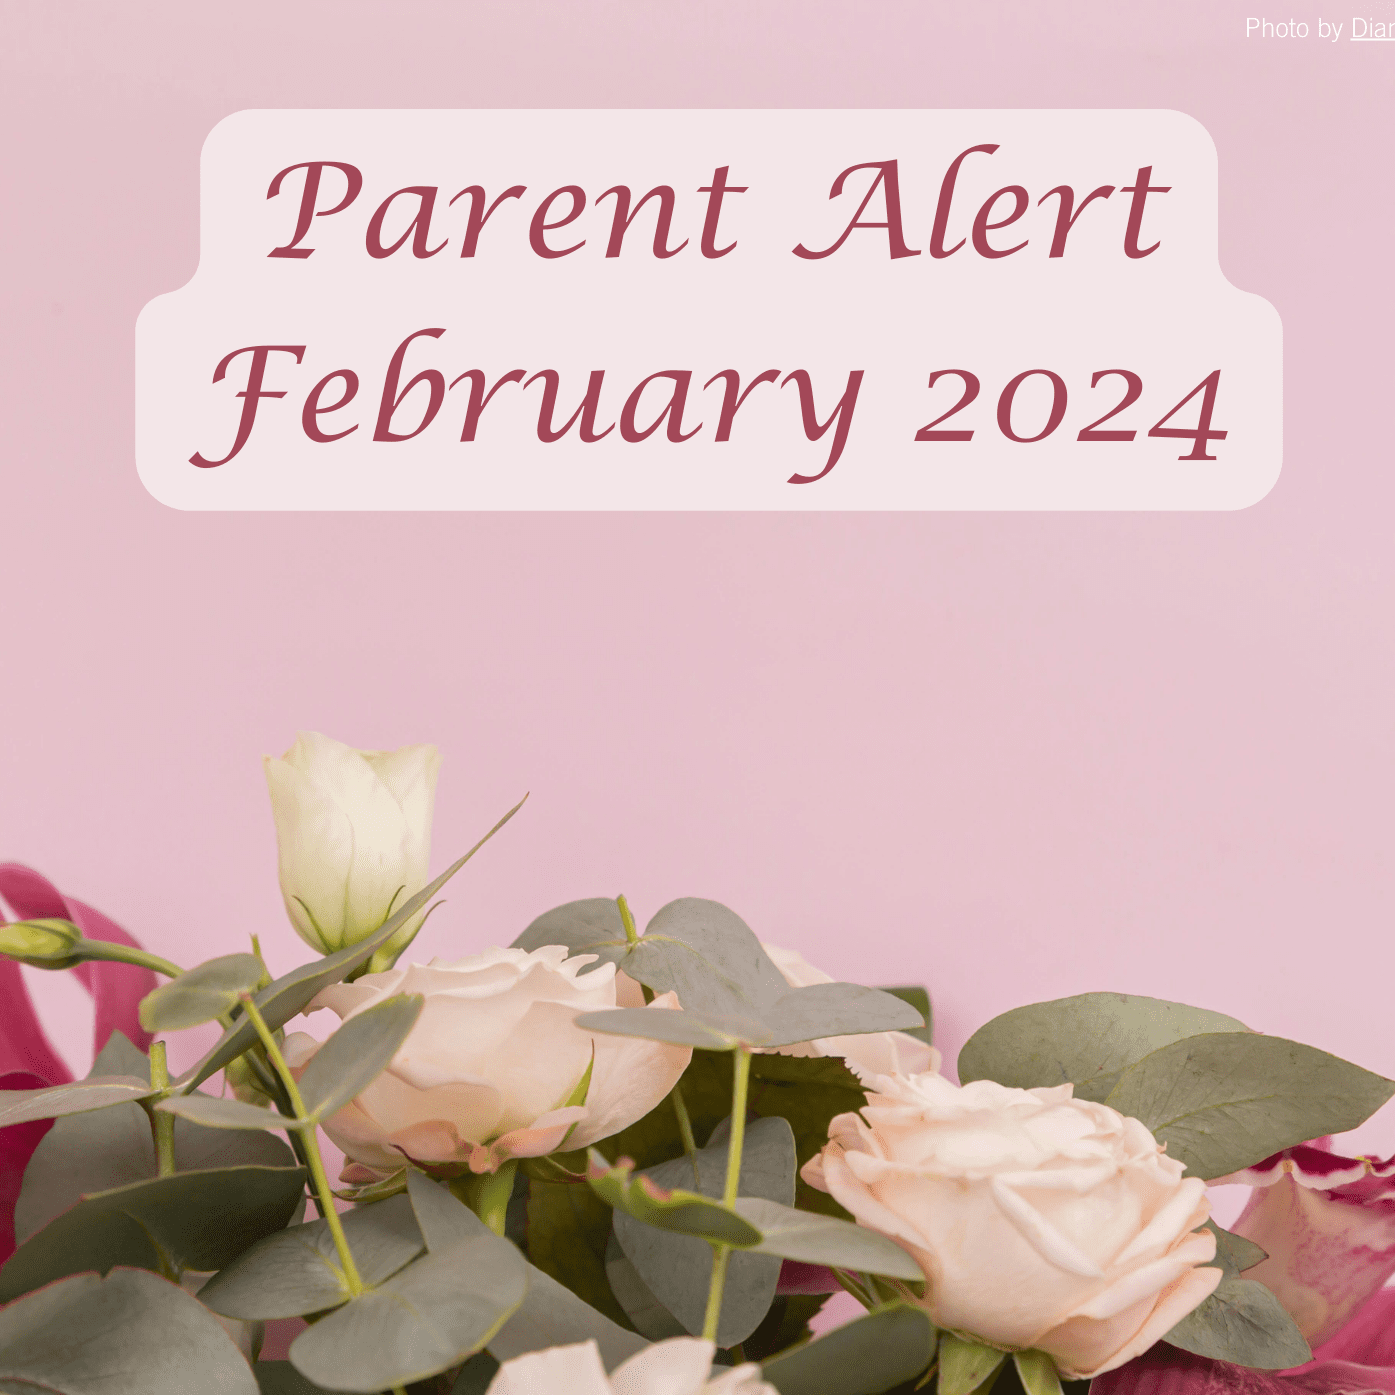 Parent Alert December 2023 Background Image (8)